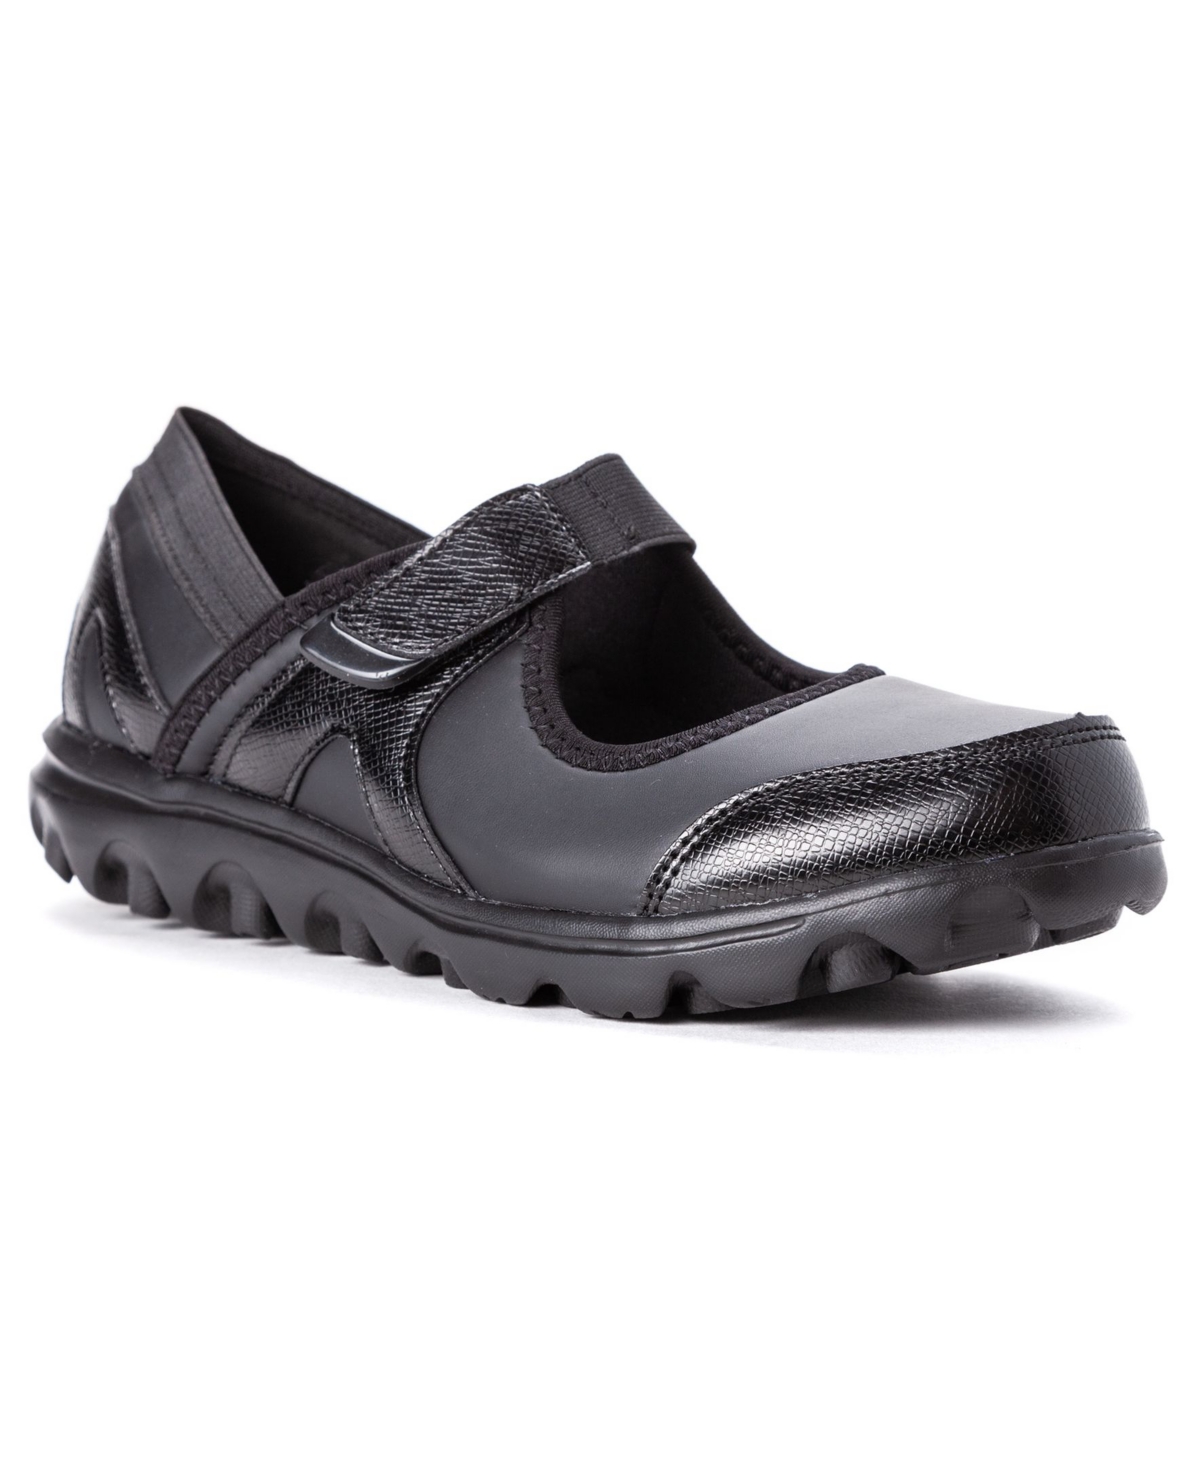 Women's Onalee Comfort Shoes - Black